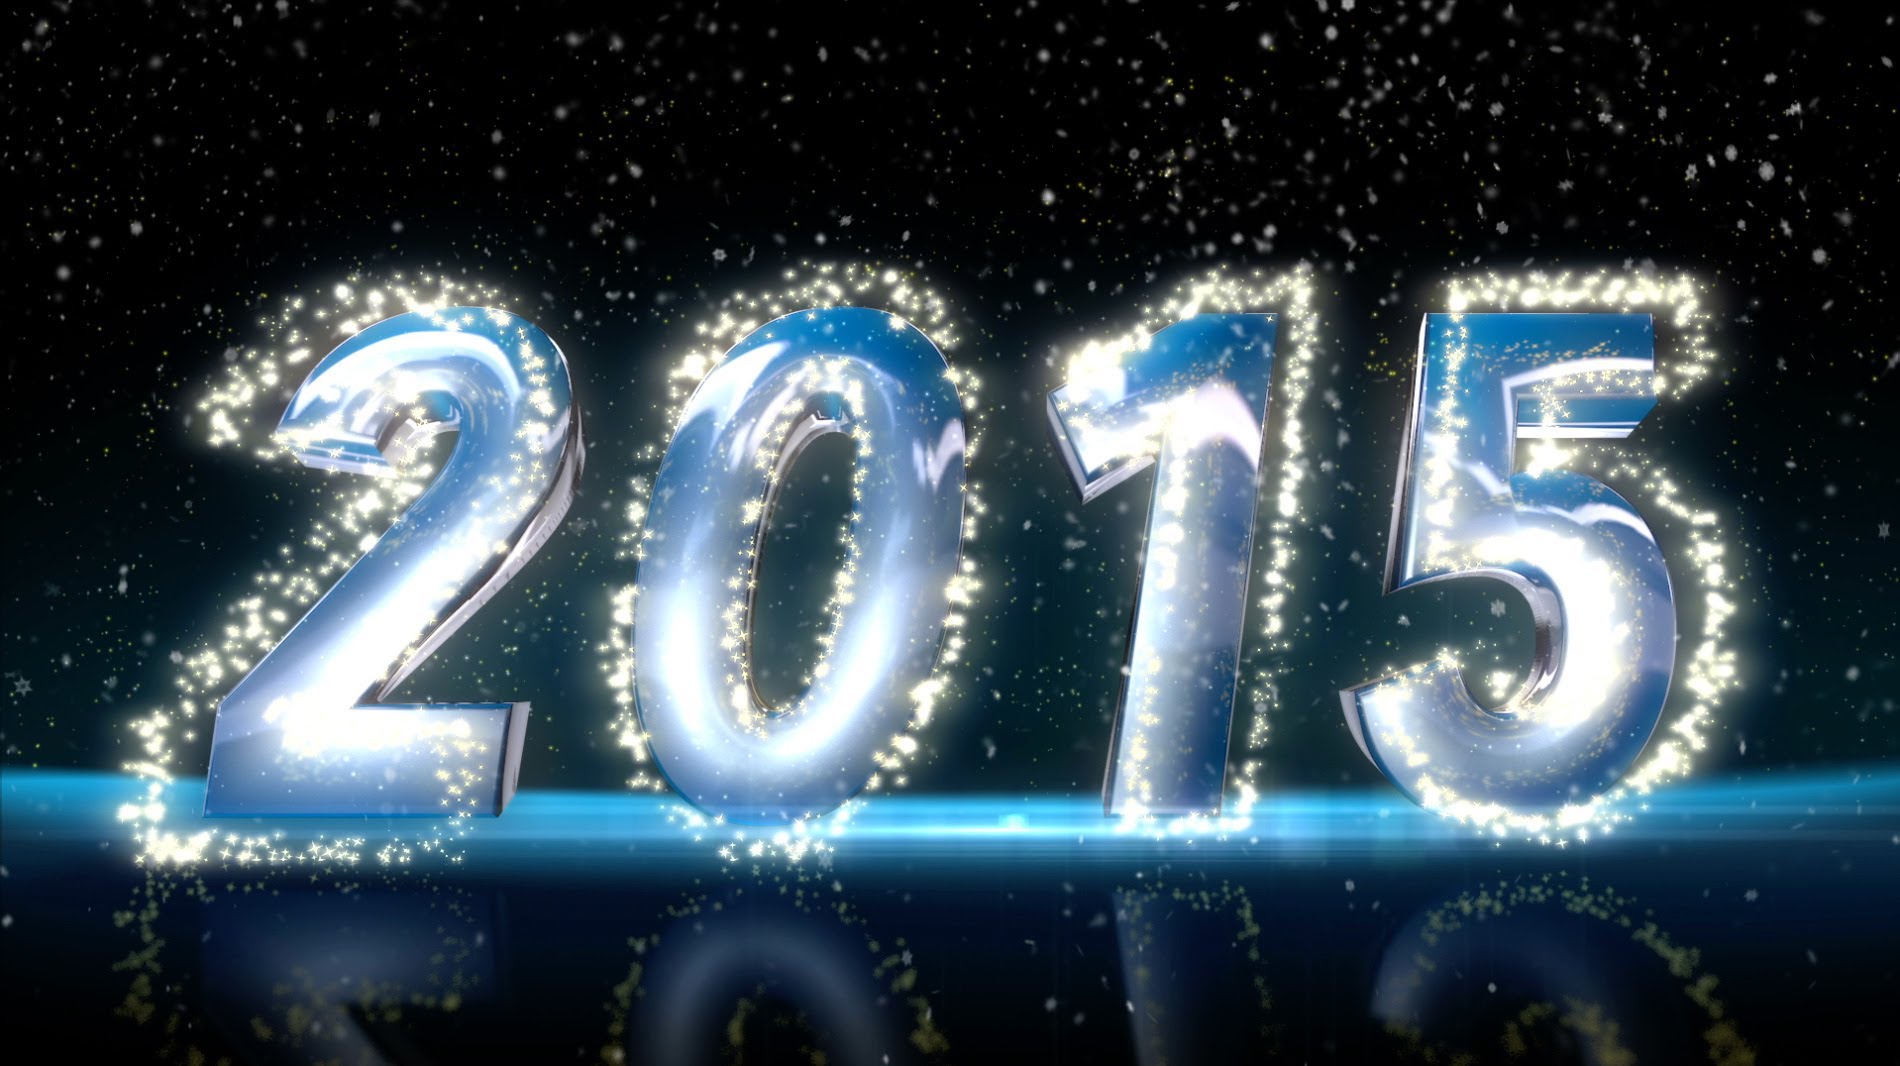 Happy New Year Happy New Year Images New Year Images 2015 Edit